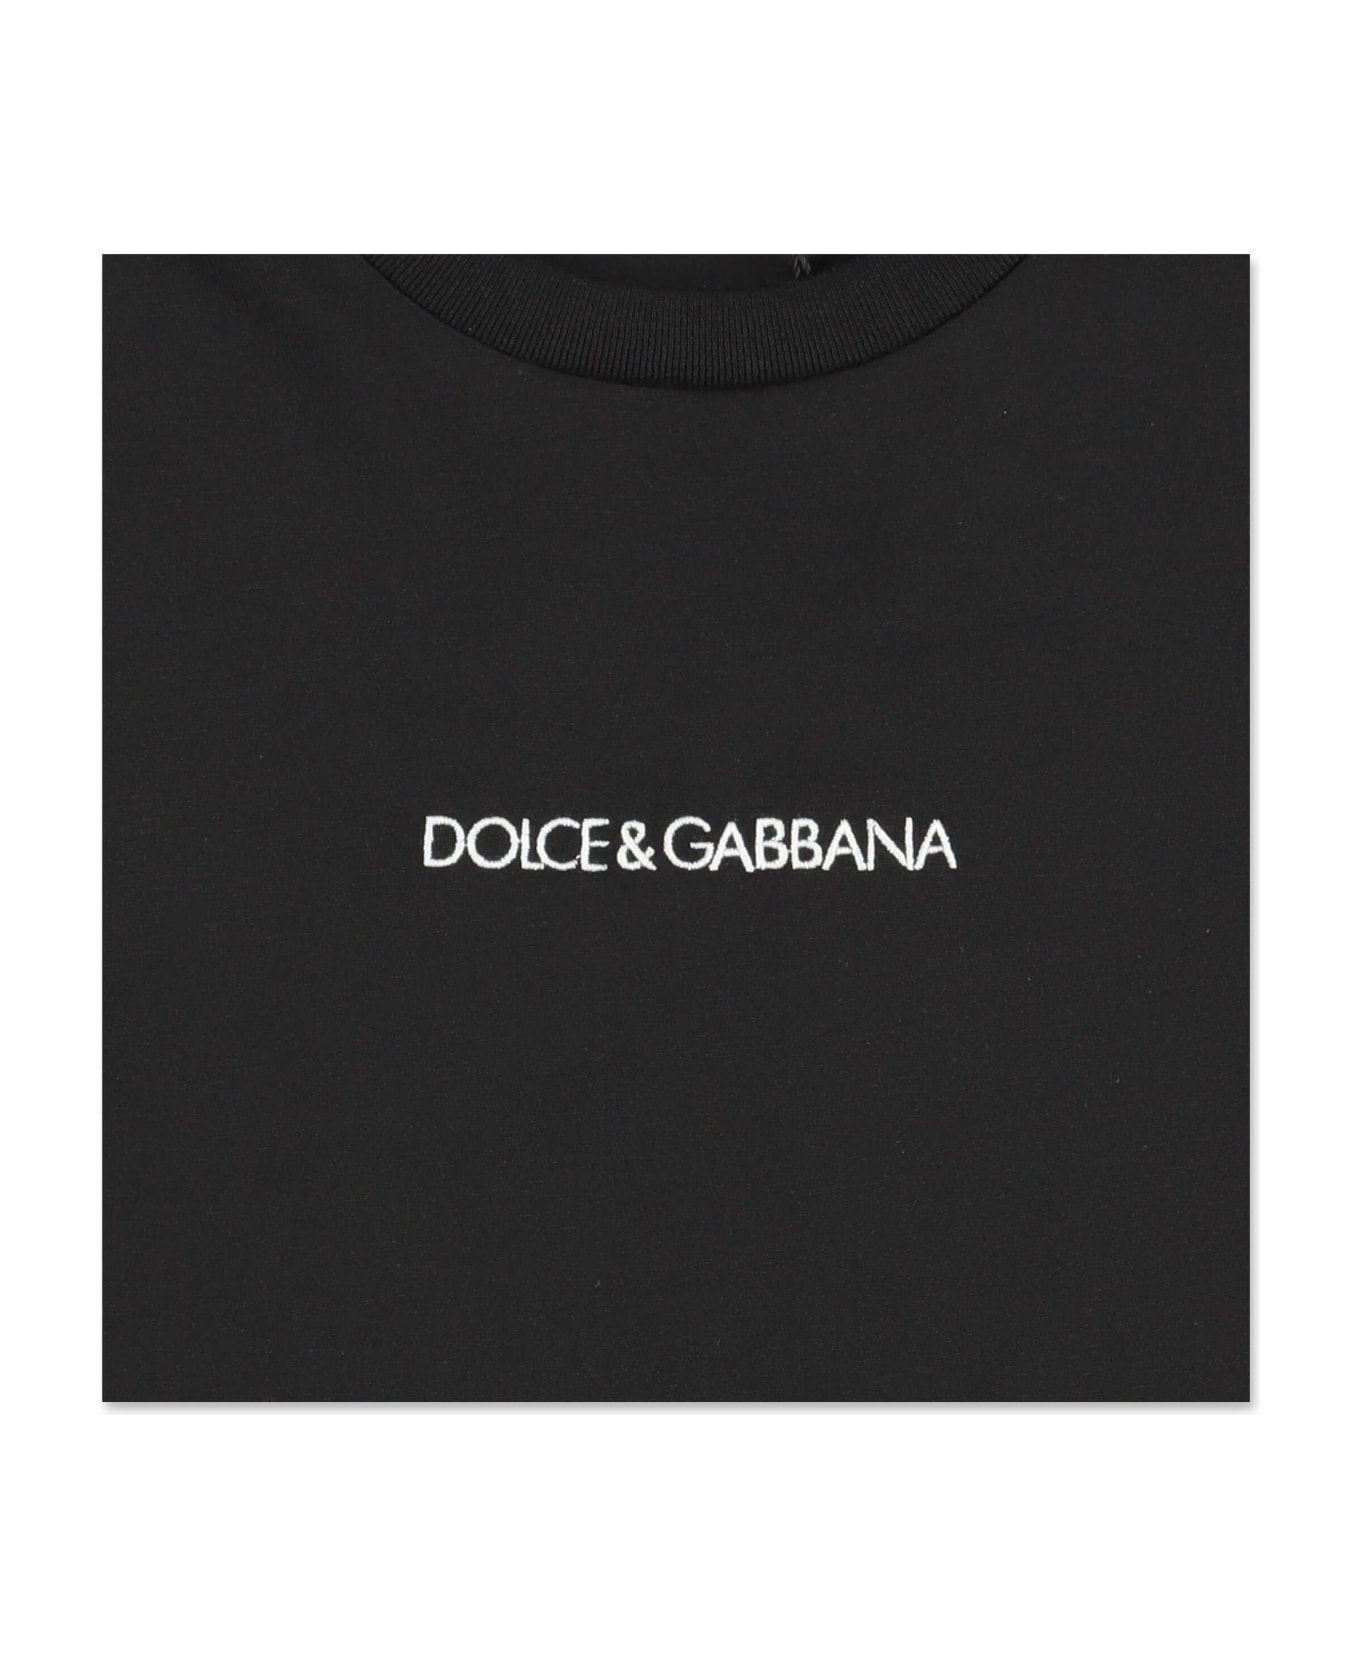 Dolce & Gabbana T-shirt Nera In Jersey Di Cotone Con Lettering Logo - Nero